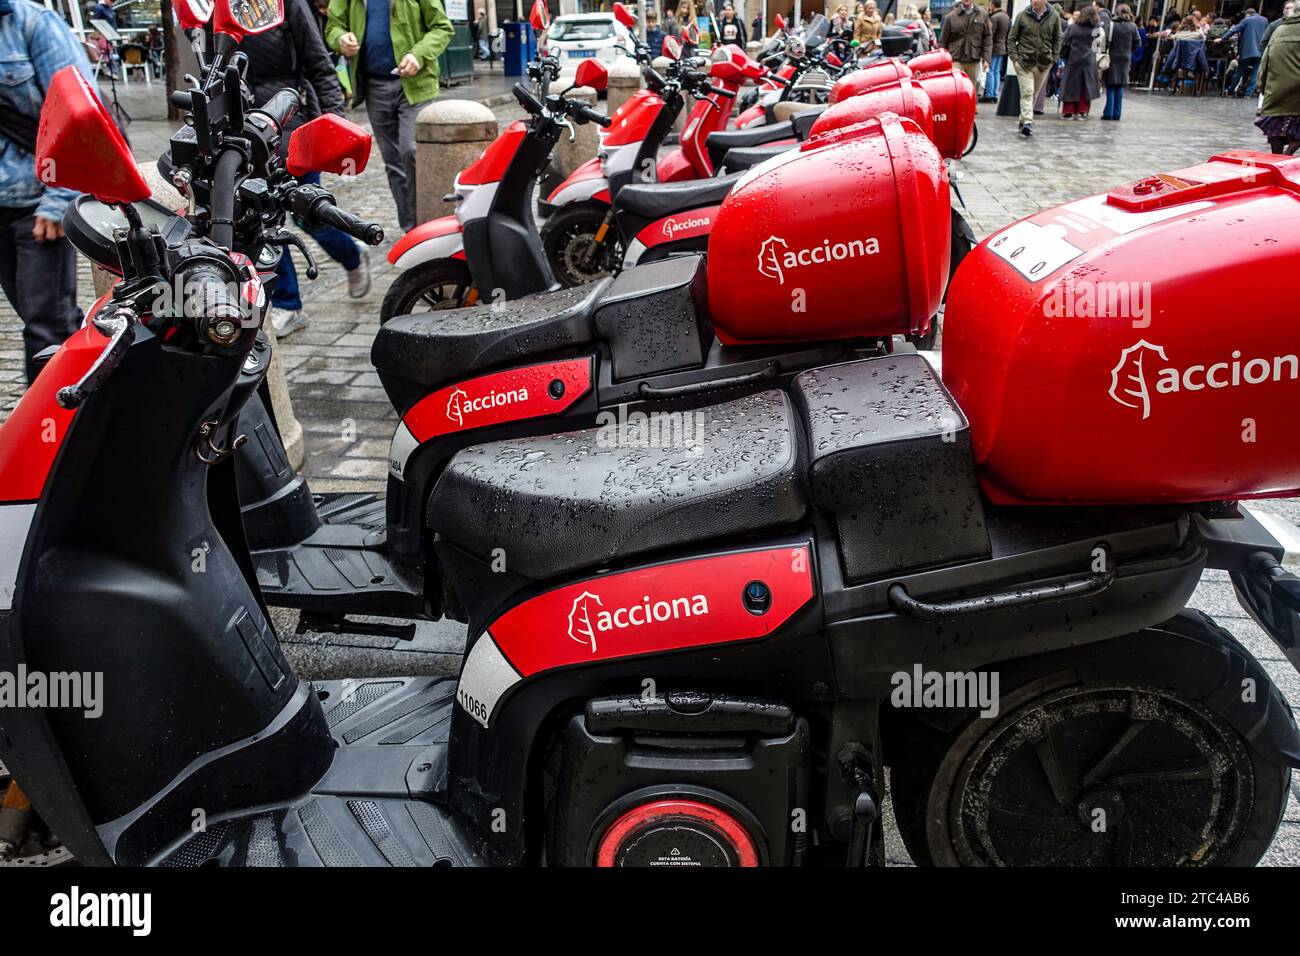 Acciona scooters, une entreprise de partage de scooters, à Séville, Espagne. Banque D'Images